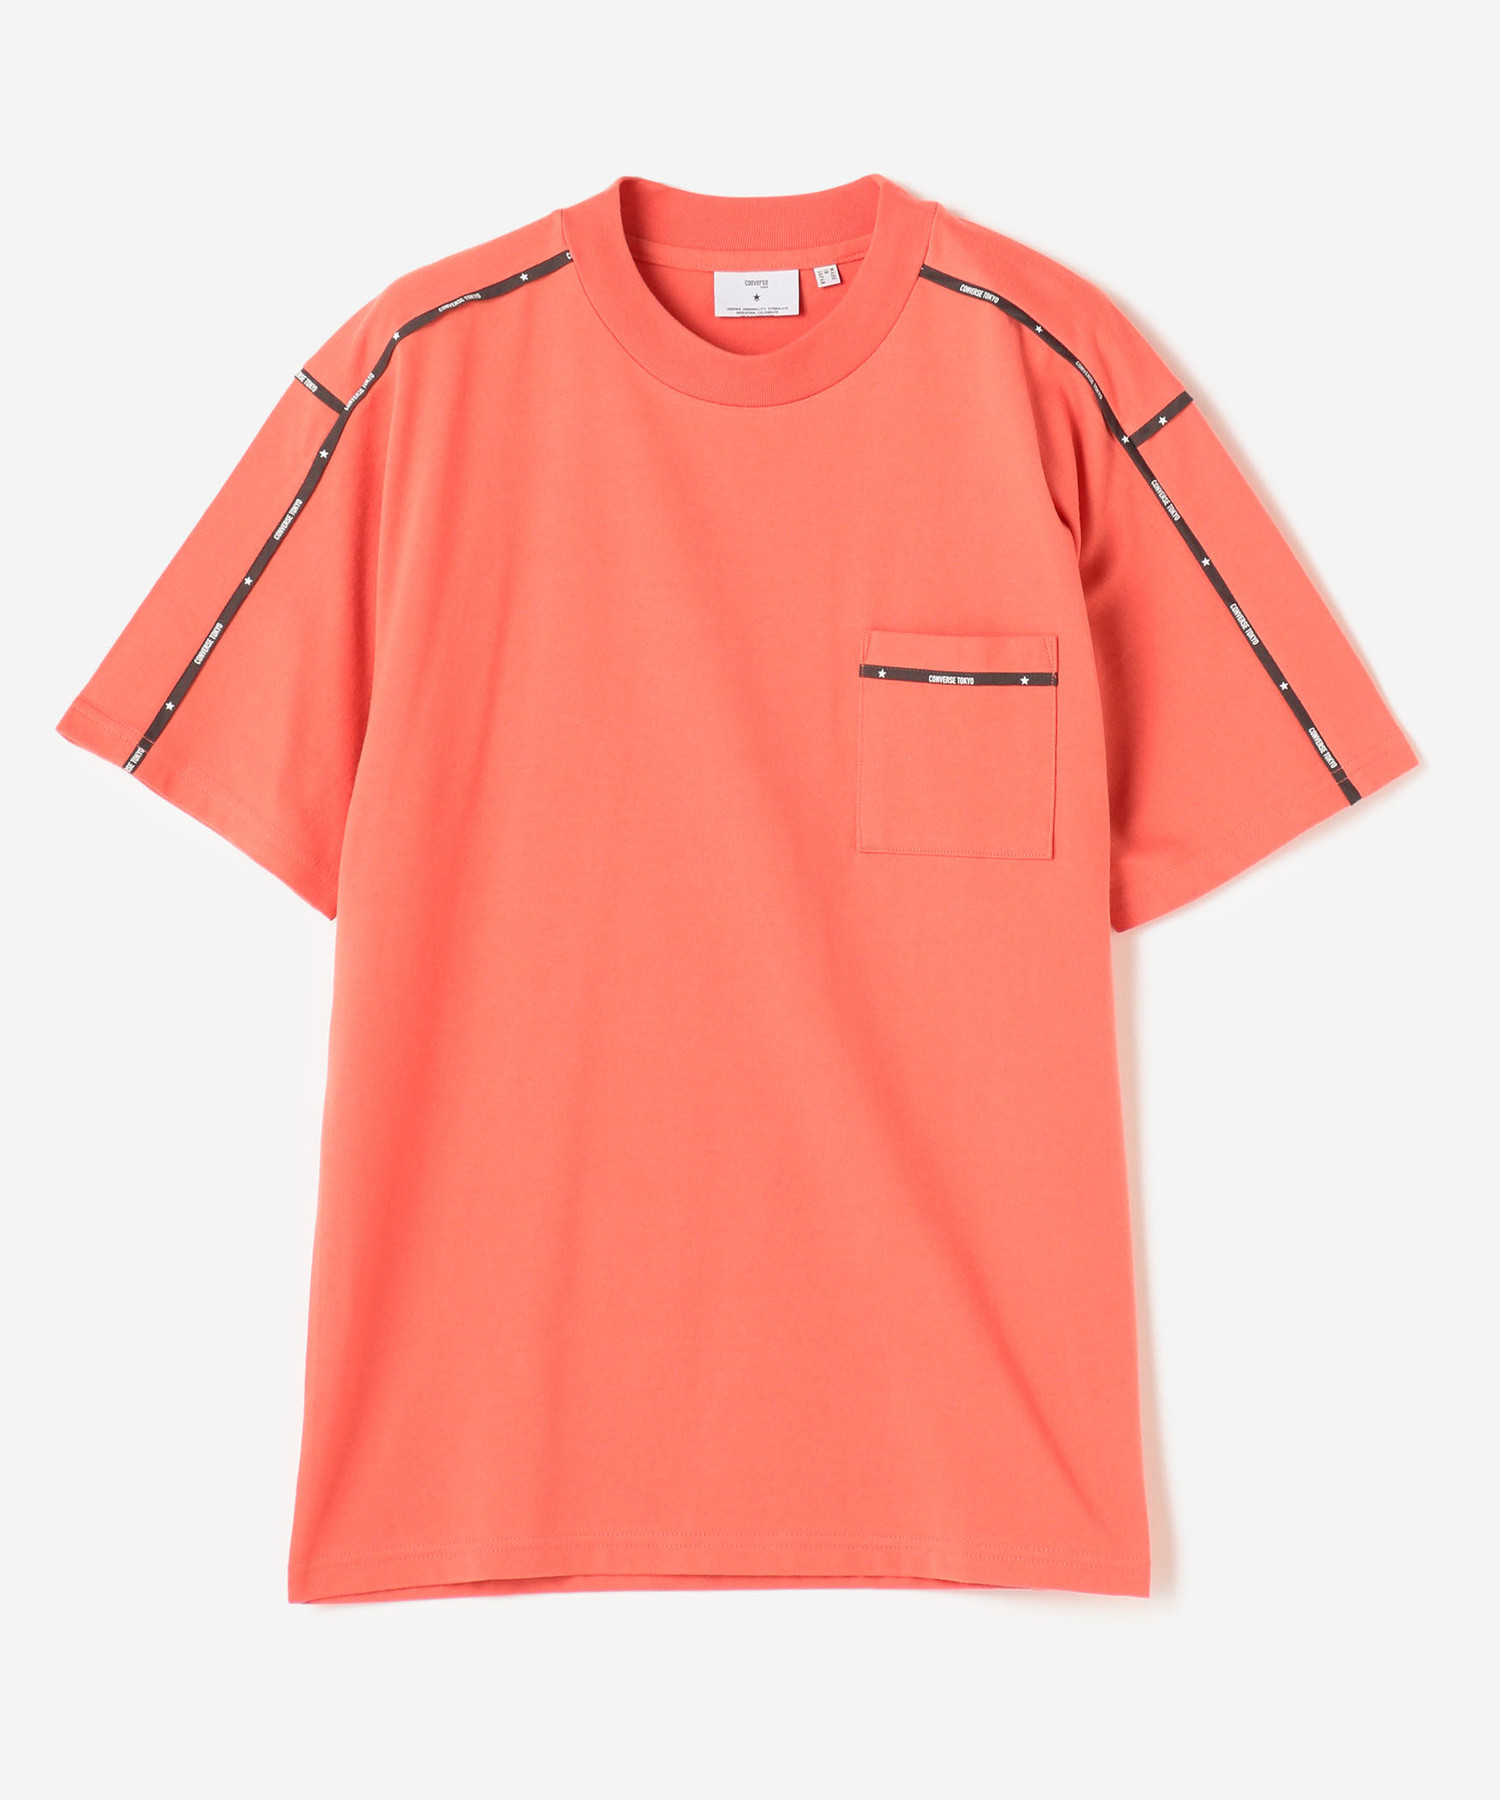 ランキングTOP5 激安超安値 CONVERSE TOKYOパイピングTシャツ